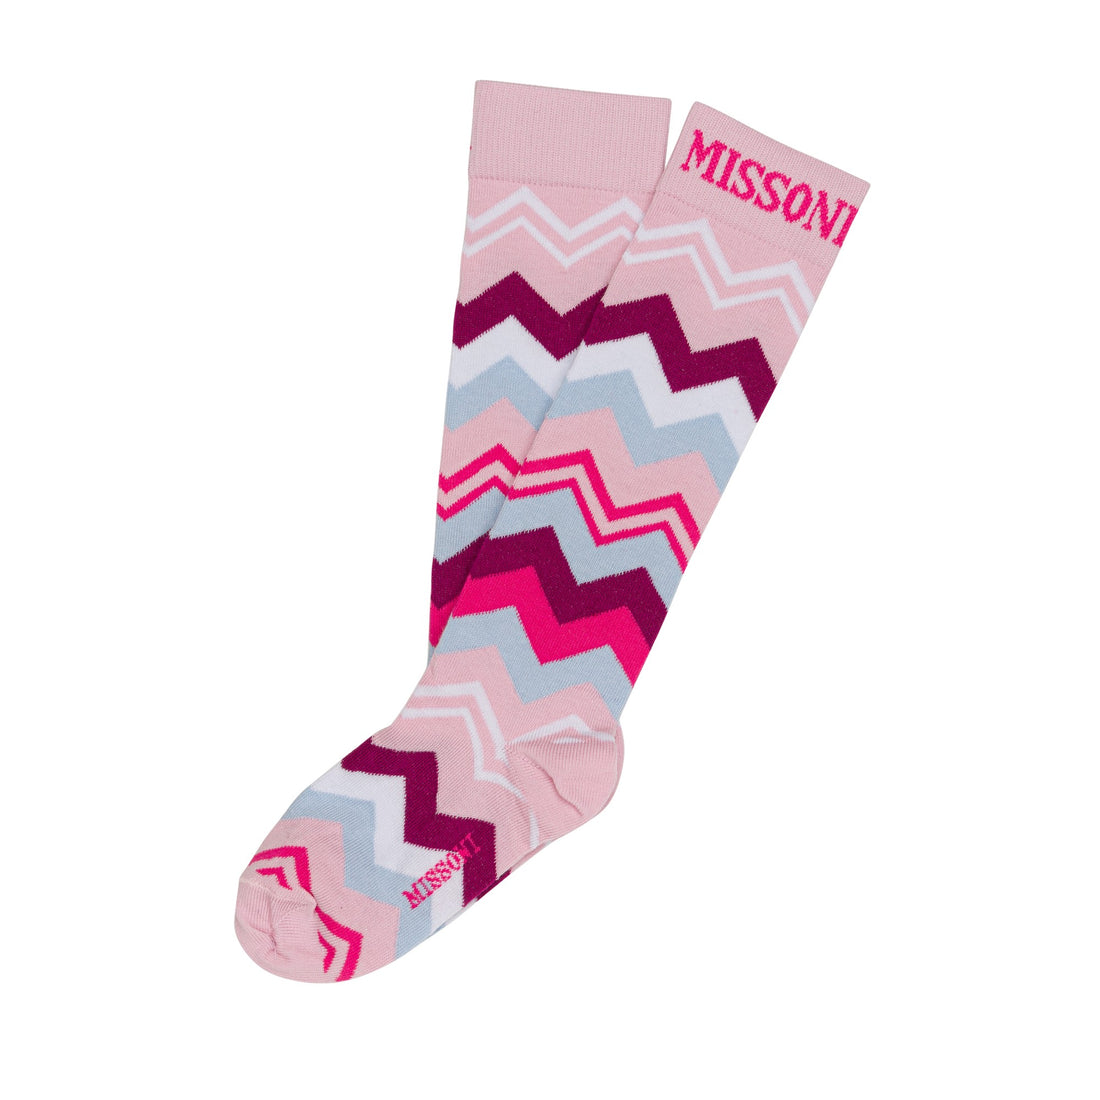 Missoni Kids Zigzag Cotton Blend Socks